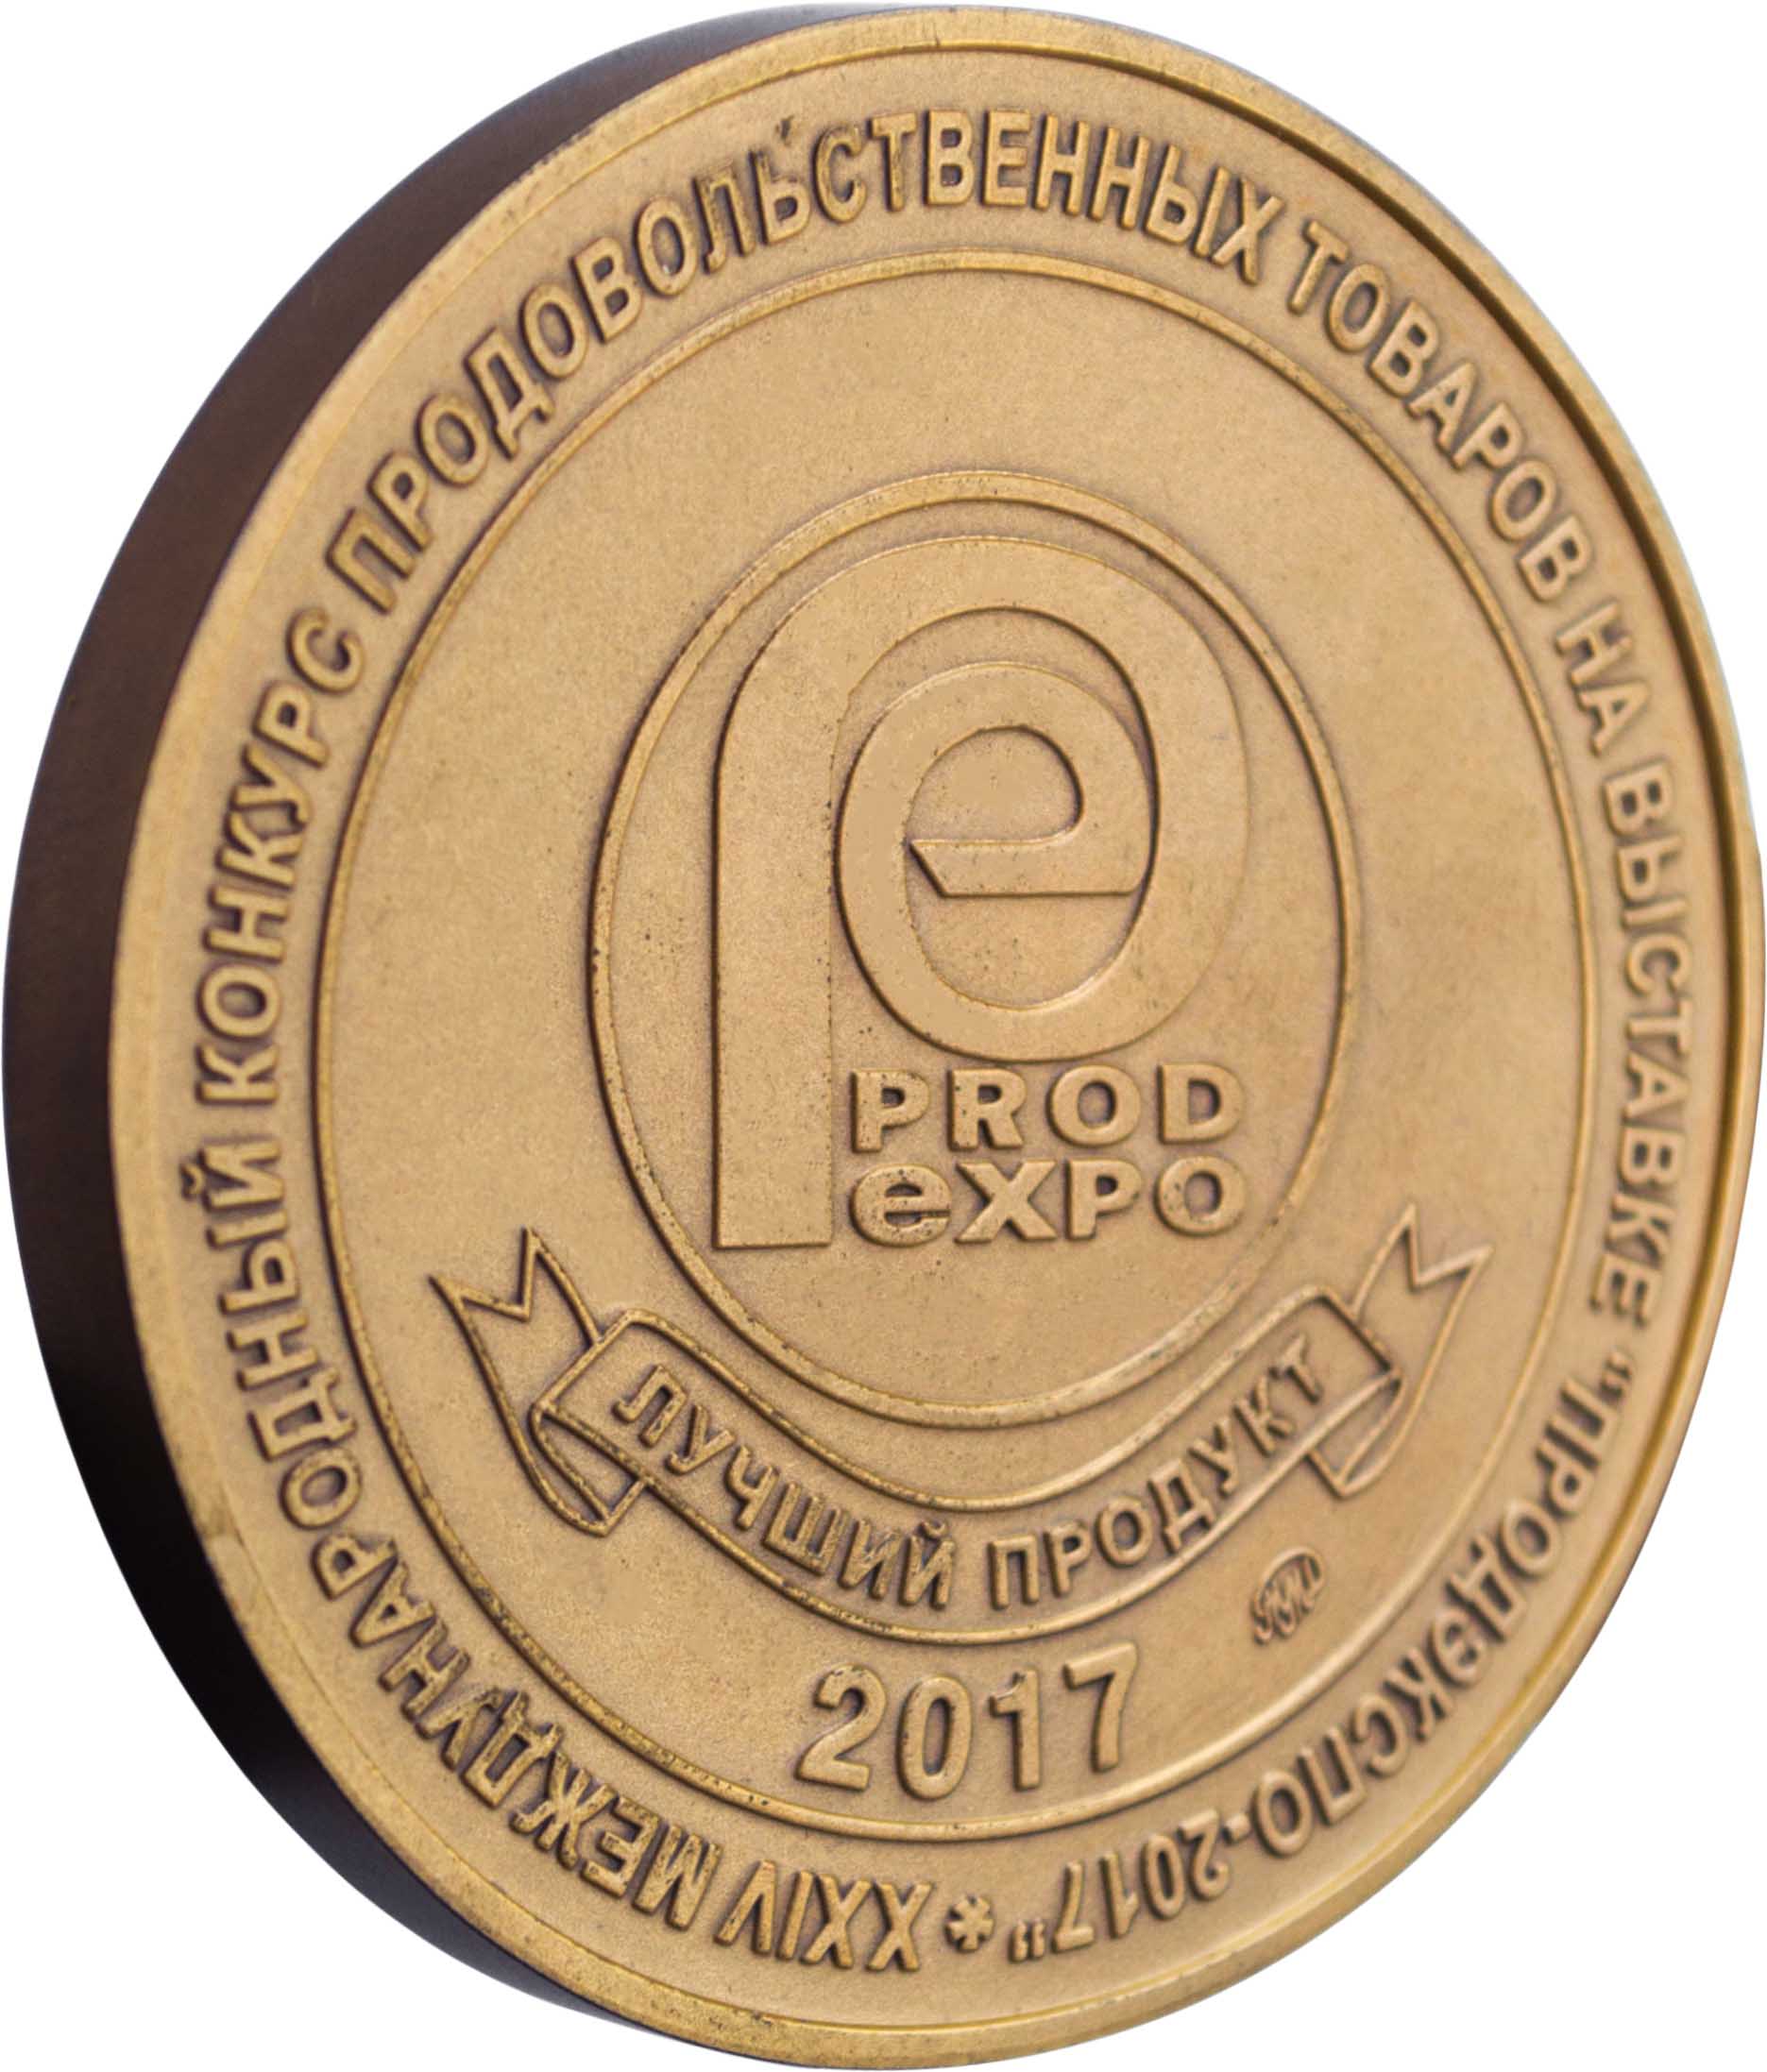 ПРОД ЭКСПО 2017 - Бронзовая медаль за Лучший продукт 2017 года